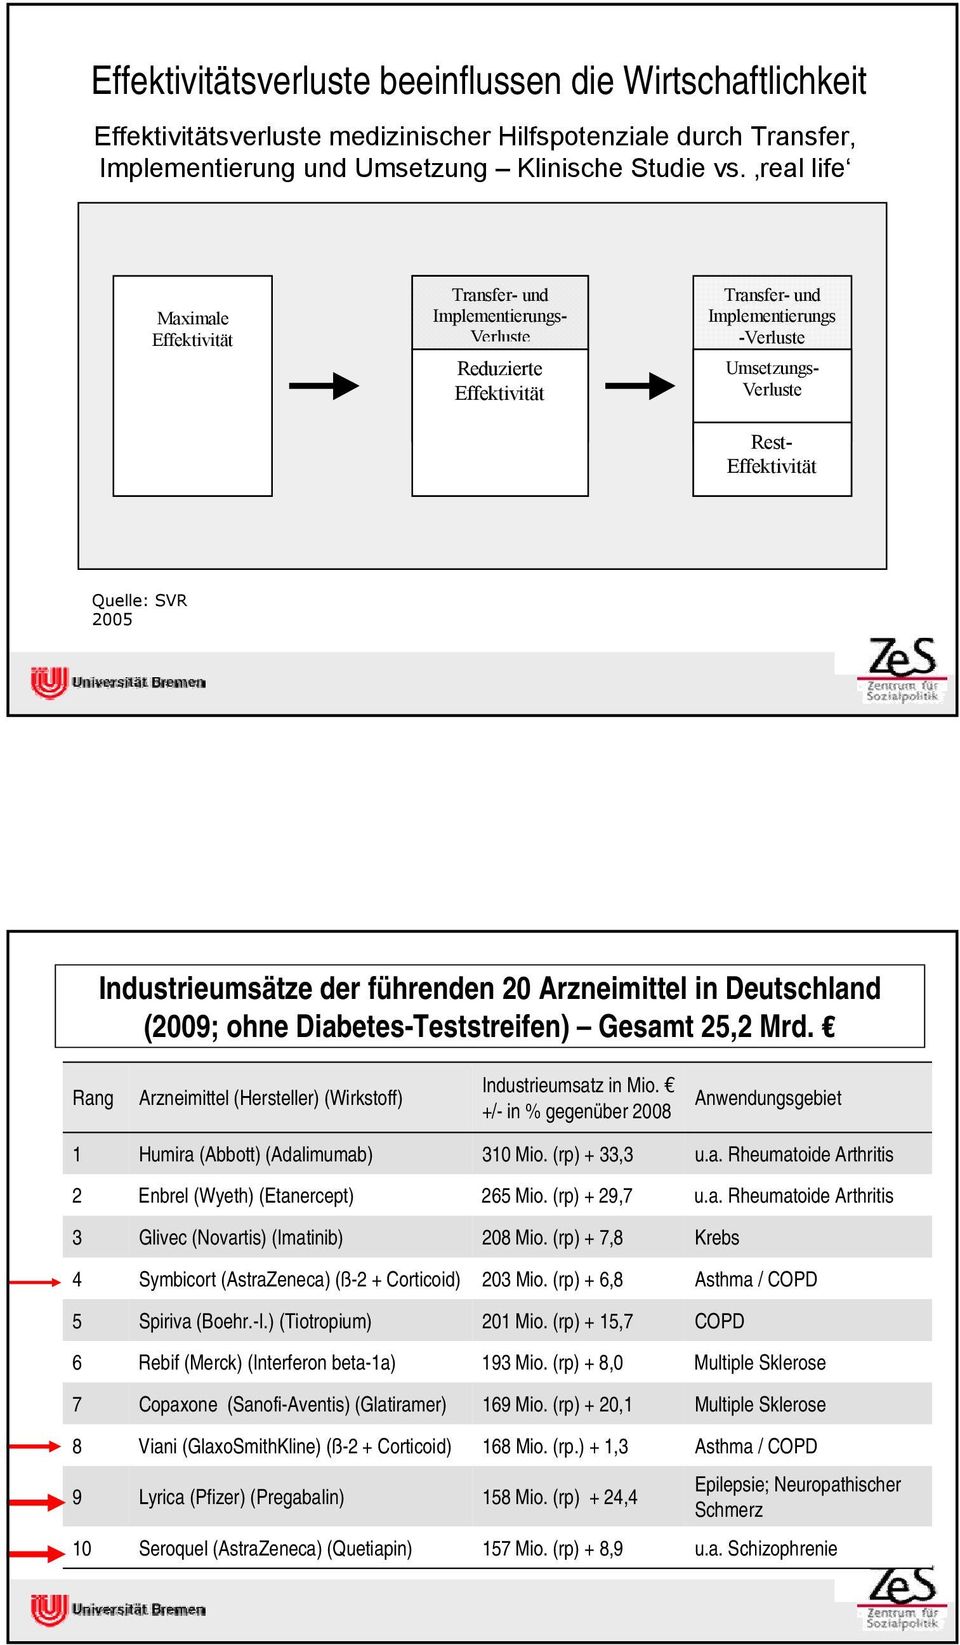 Industrieumsätze der führenden 20 Arzneimittel in Deutschland (2009; ohne Diabetes-Teststreifen) Gesamt 25,2 Mrd. Rang Arzneimittel (Hersteller) (Wirkstoff) Industrieumsatz in Mio.